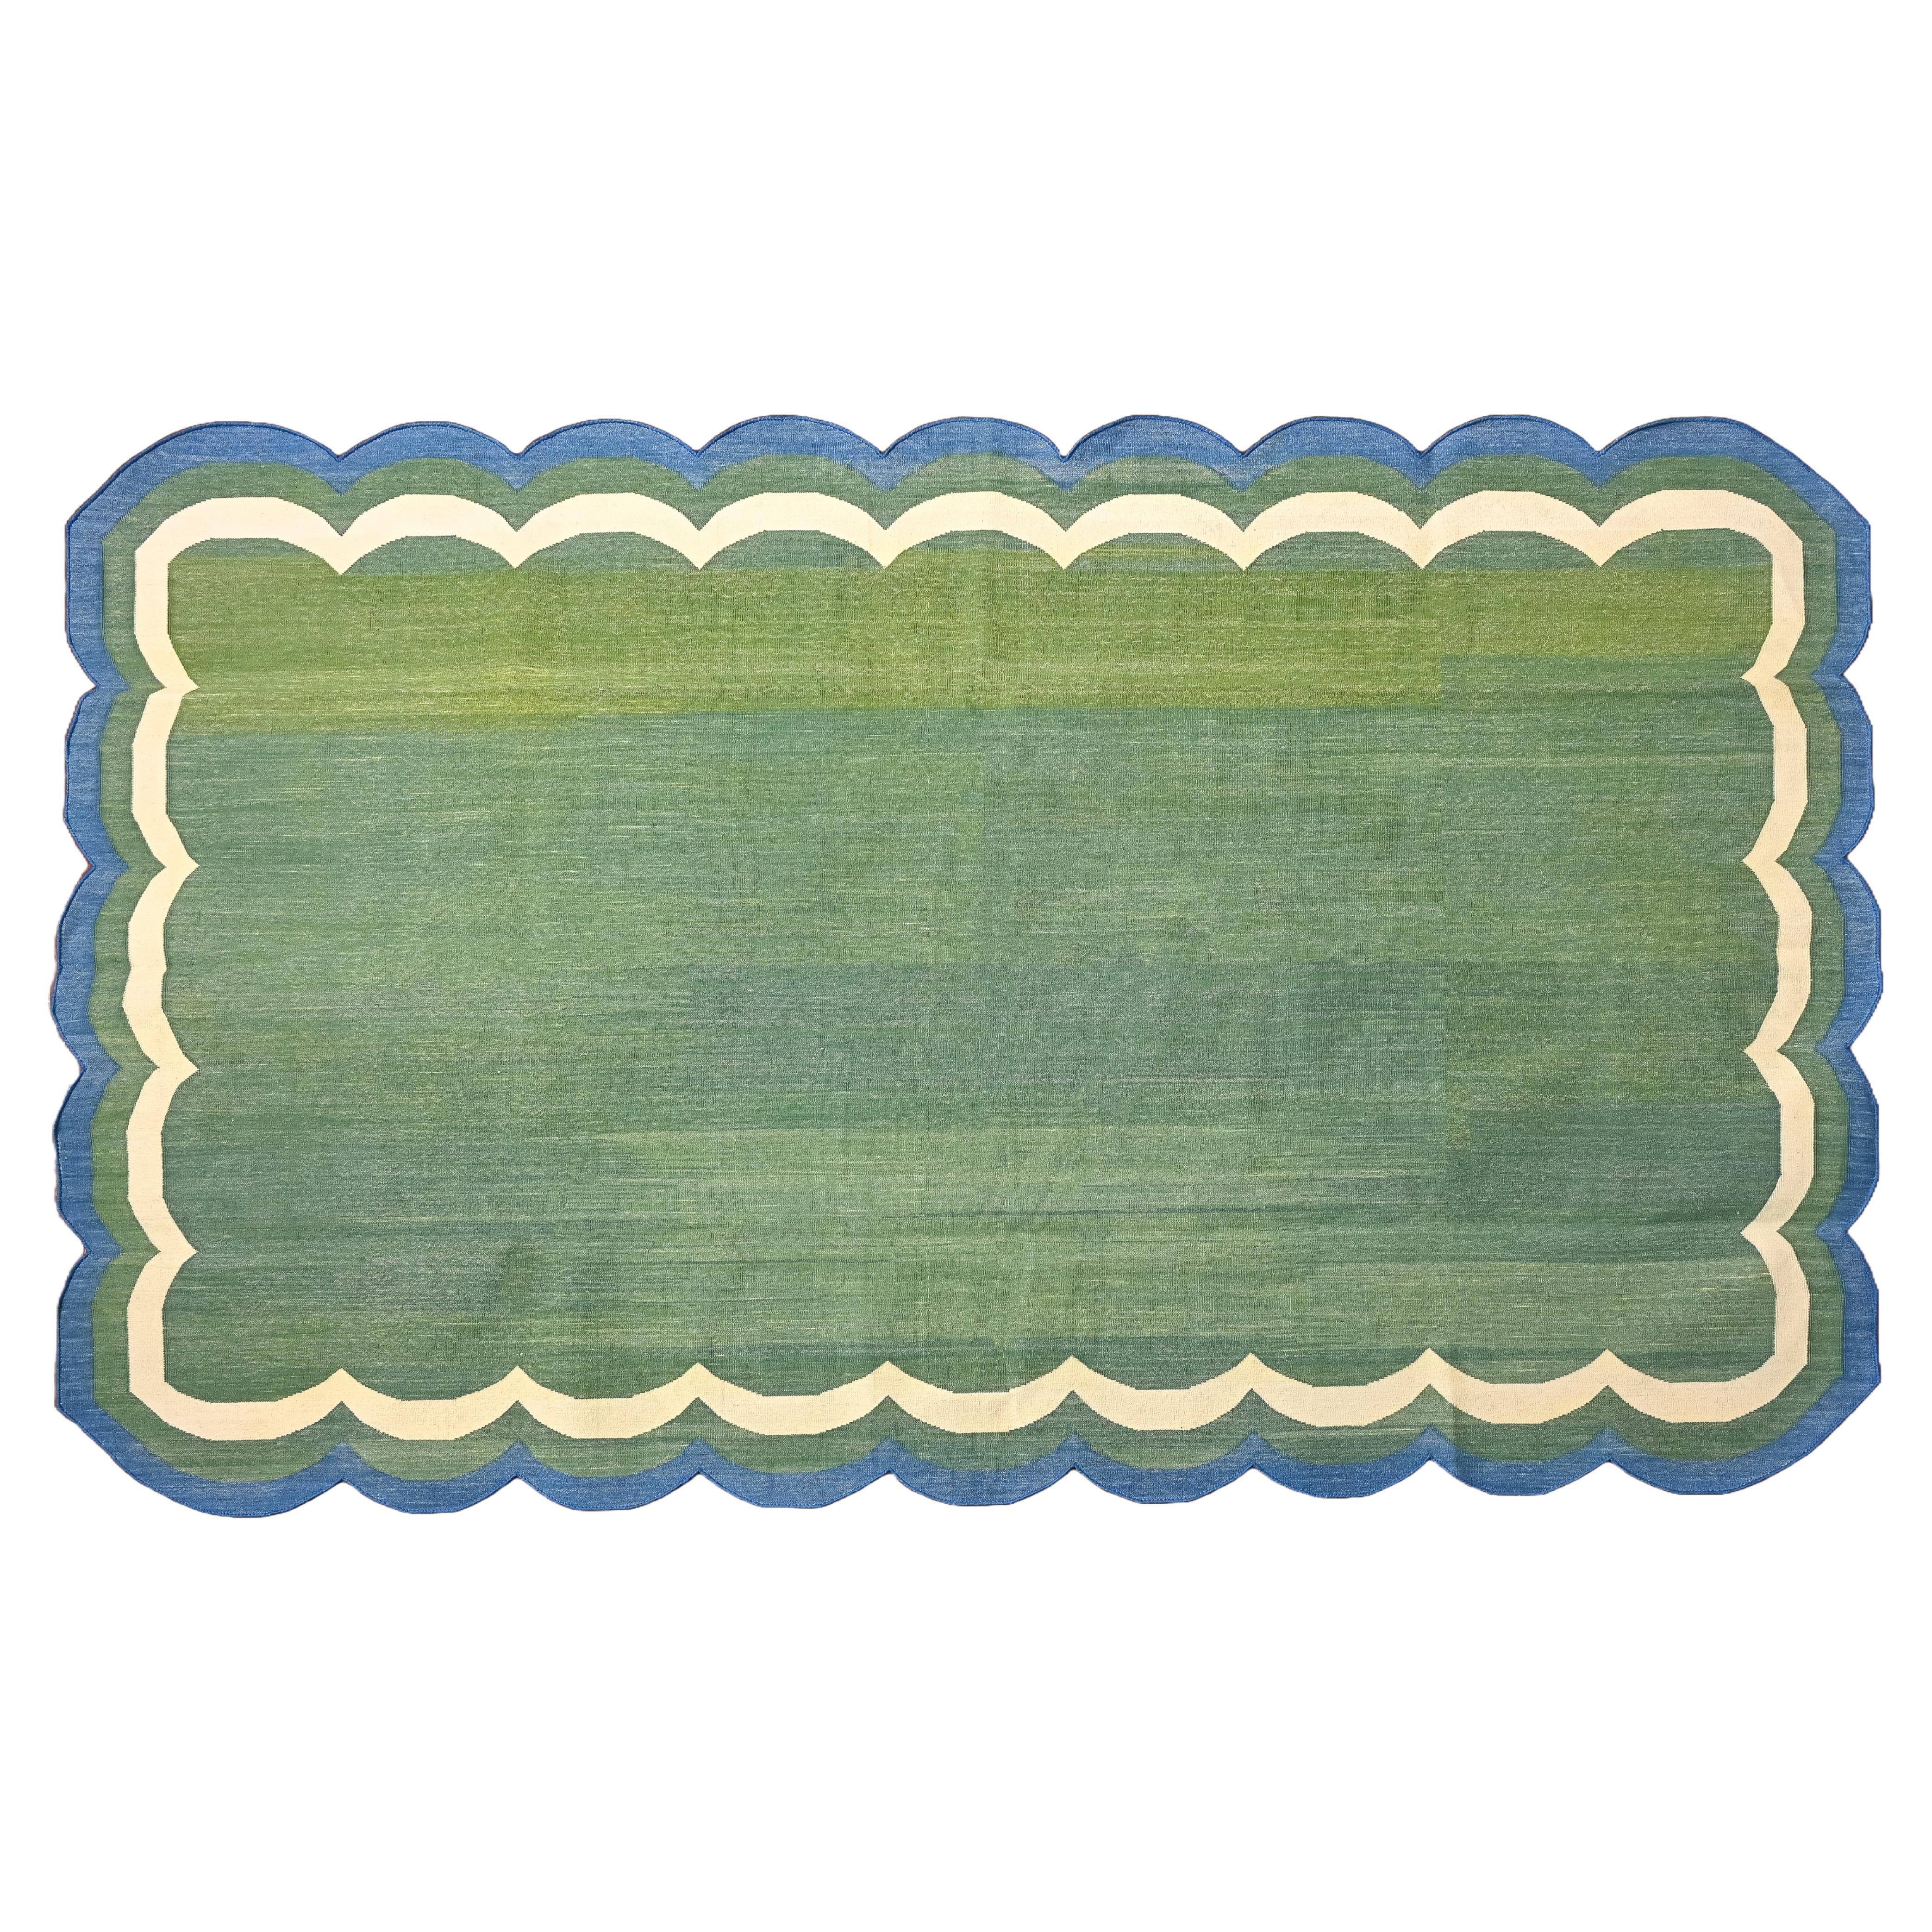 Handgefertigter Flachgewebe-Teppich aus Baumwolle, grüner und blauer Jakobsmuschel-Indianer Dhurrie